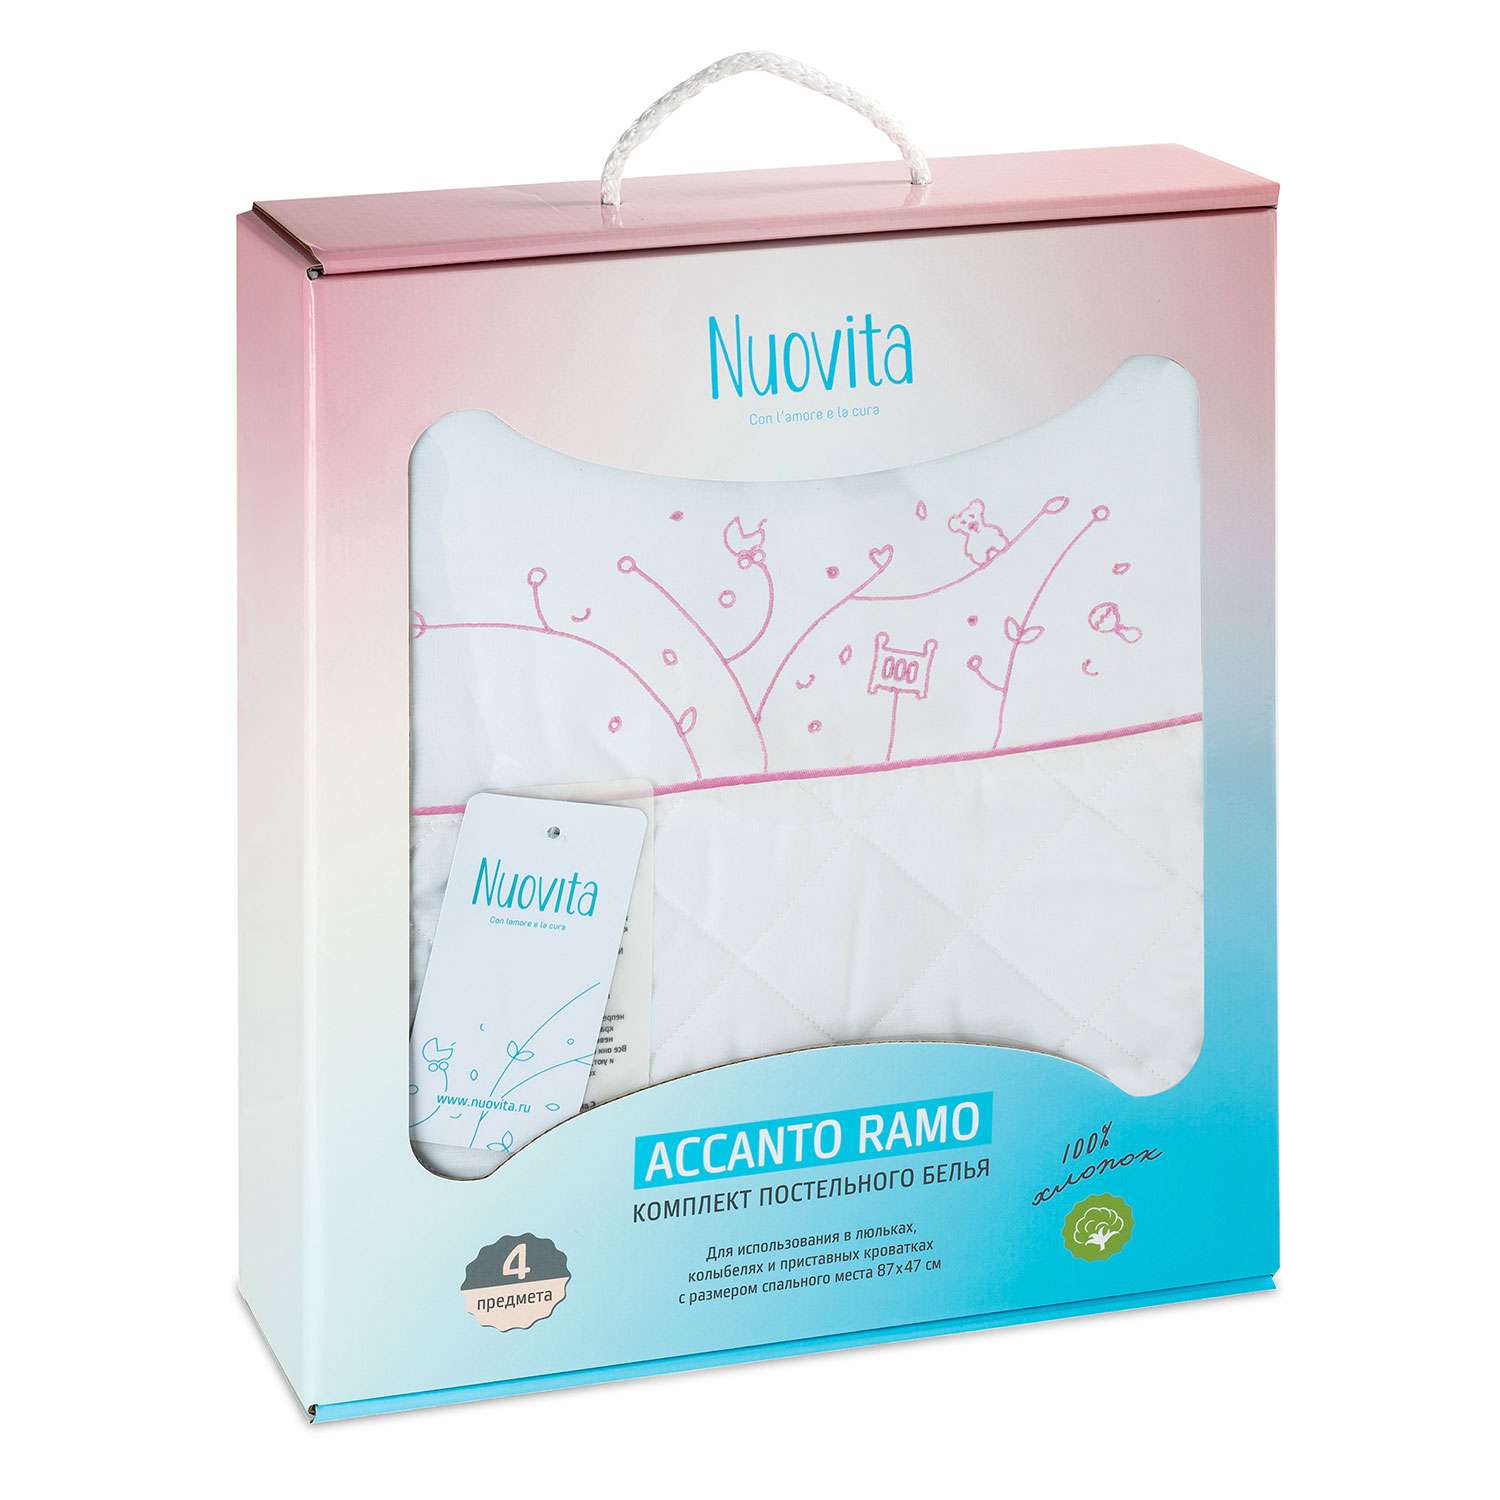 Комплект постельного белья Nuovita Accanto Ramo 4 предмета розовый - фото 1